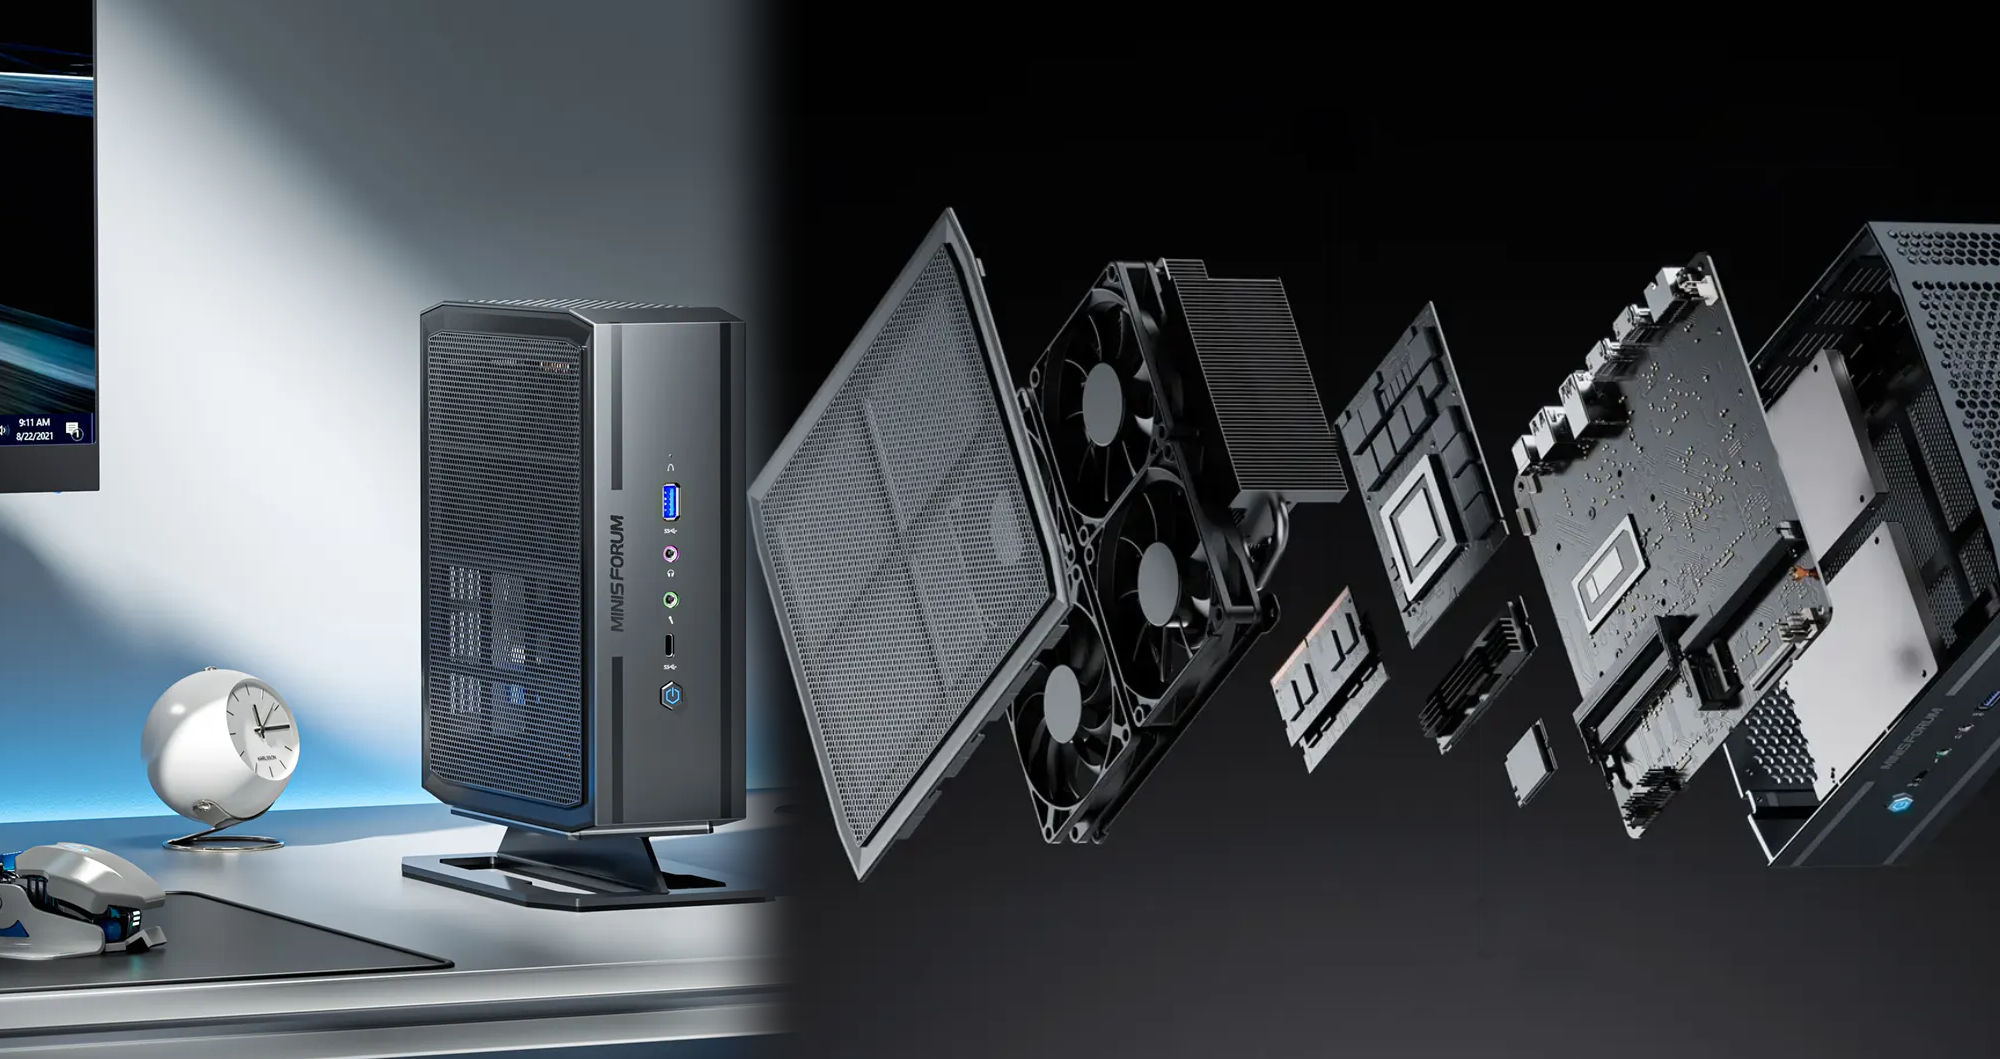 Minisforum Mini-PC features discrete Intel Arc A730M graphics and four fans  